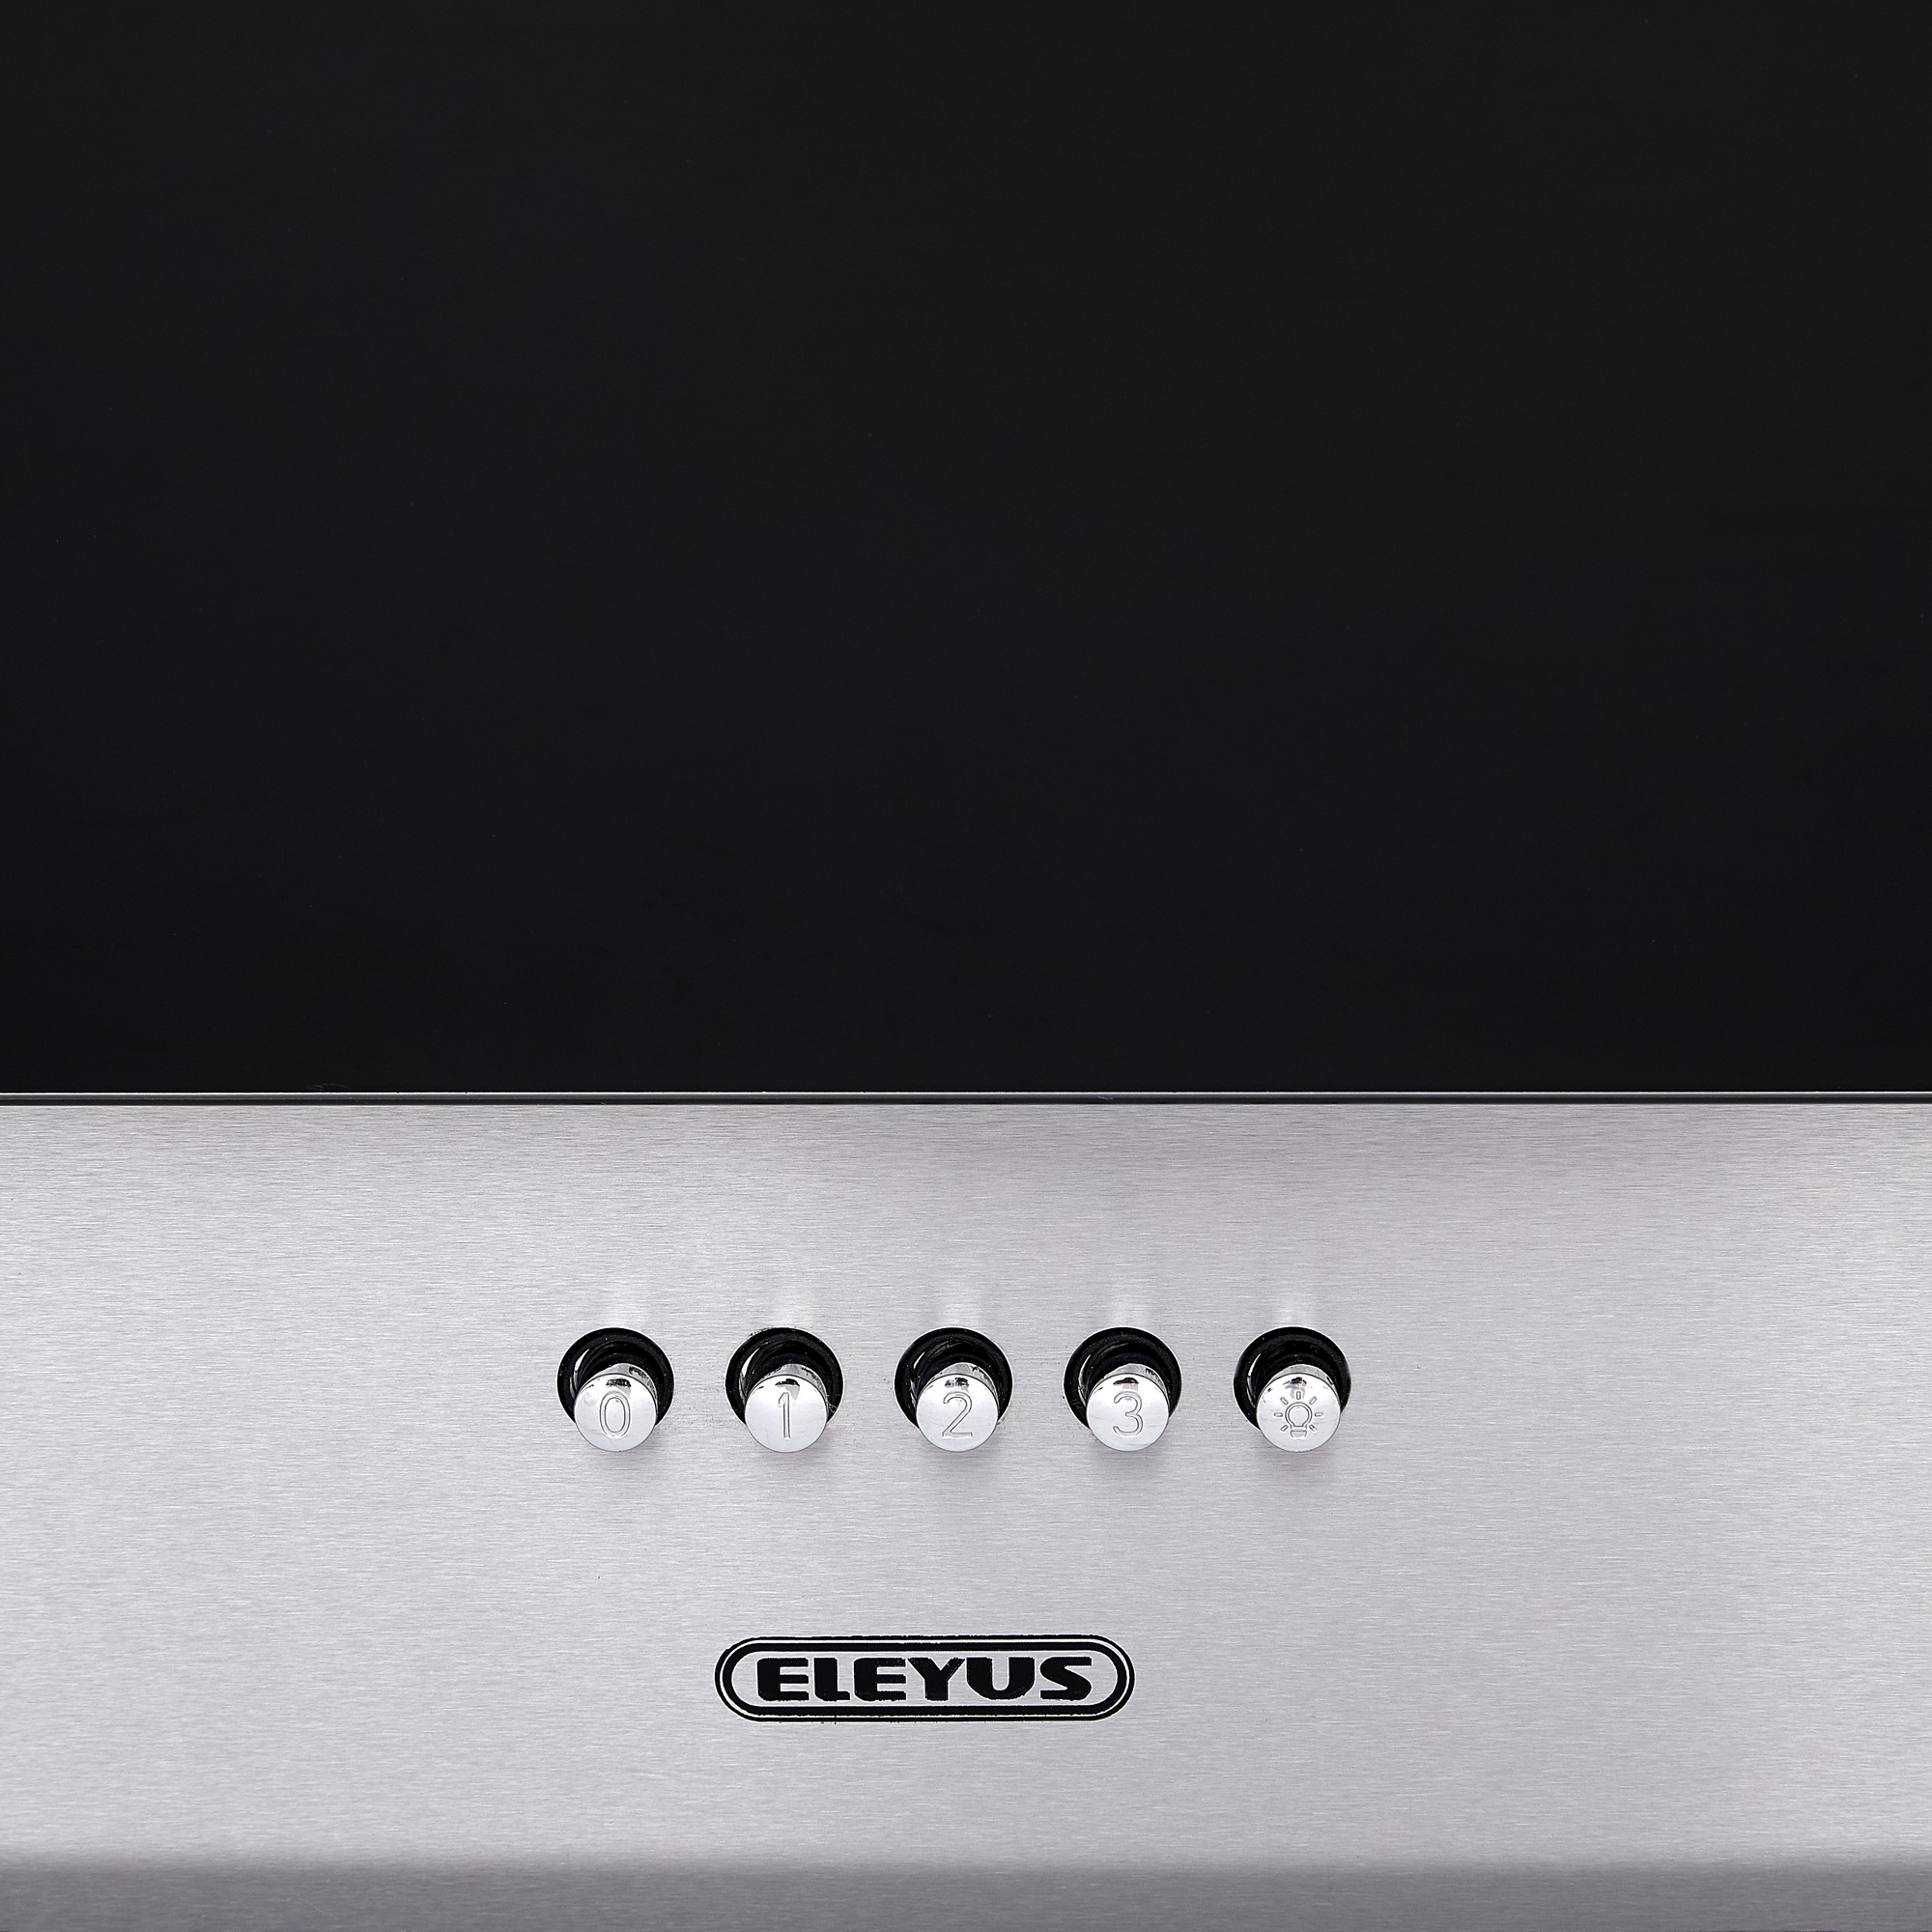 Кухонная вытяжка Eleyus Focus 1000 60 IS+BL обзор - фото 8